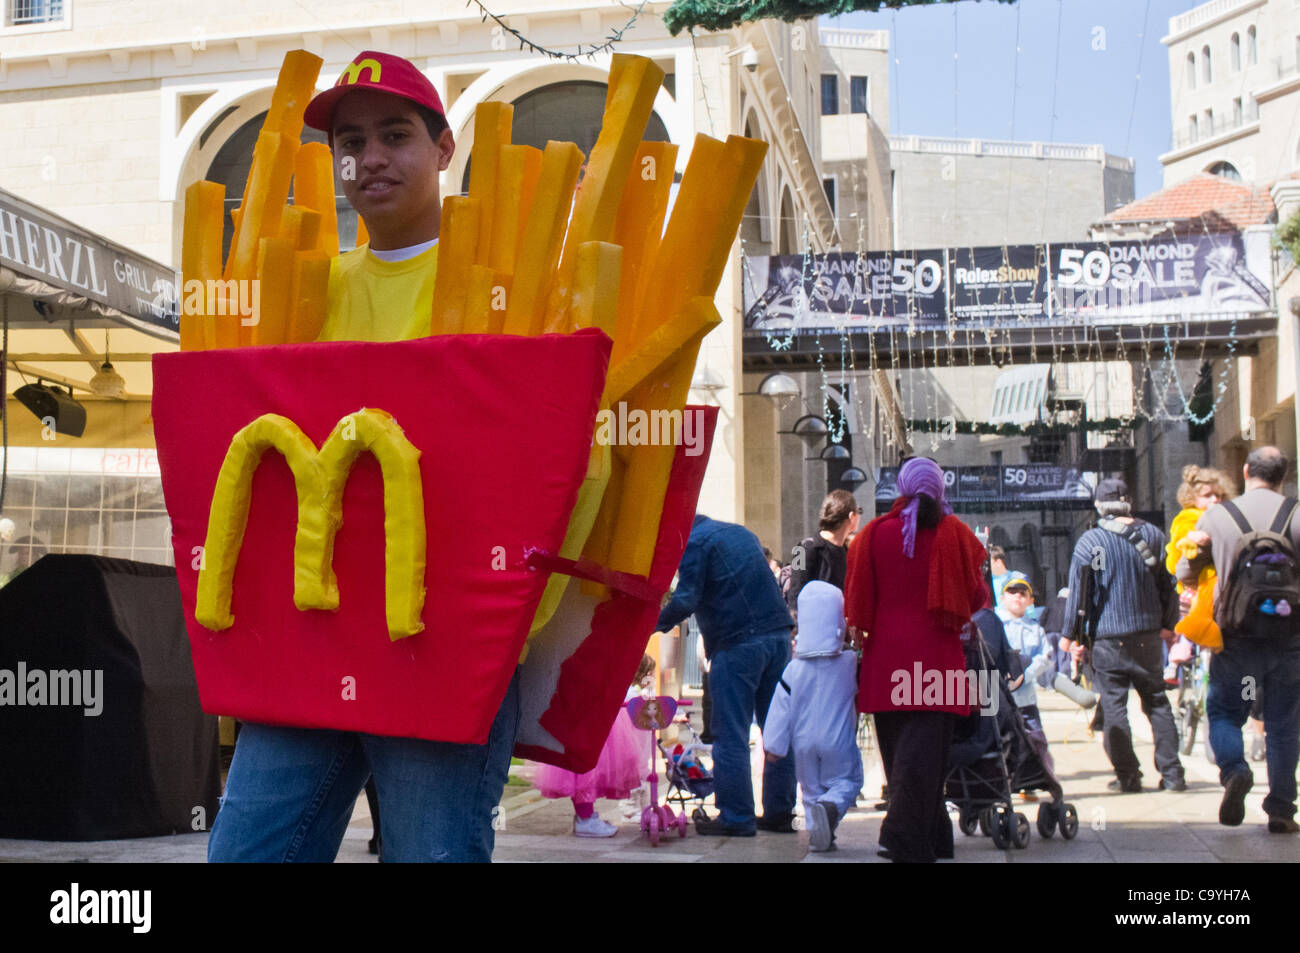 Ein kleiner Junge trägt ein McDonalds Pommes frites Kostüm an Purim  gefeiert als ein Urlaub, glücklich, Karneval-wie zum Gedenken an die  Ereignisse in das Buch Esther beschrieben. Jerusalem, Israel. 8. März 2012